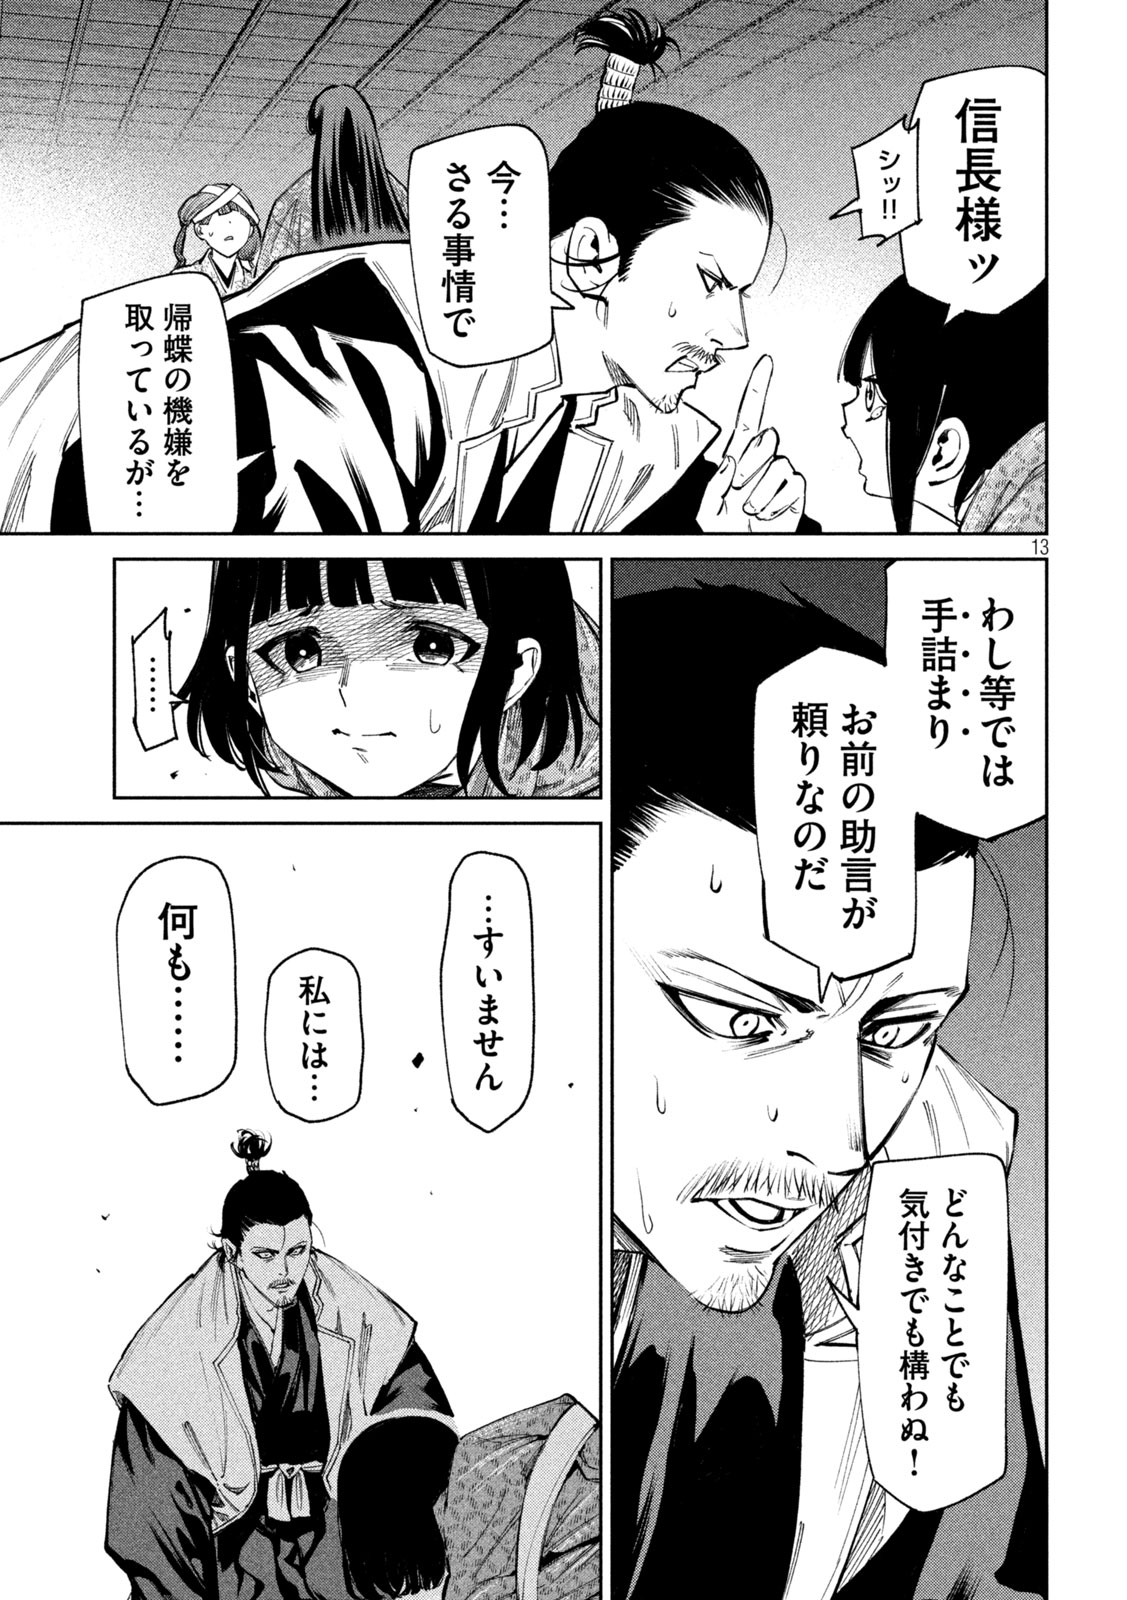 Nando toki o kurikaeshitemo Honnouji ga moerunjaga! - Chapter 125 - Page 13